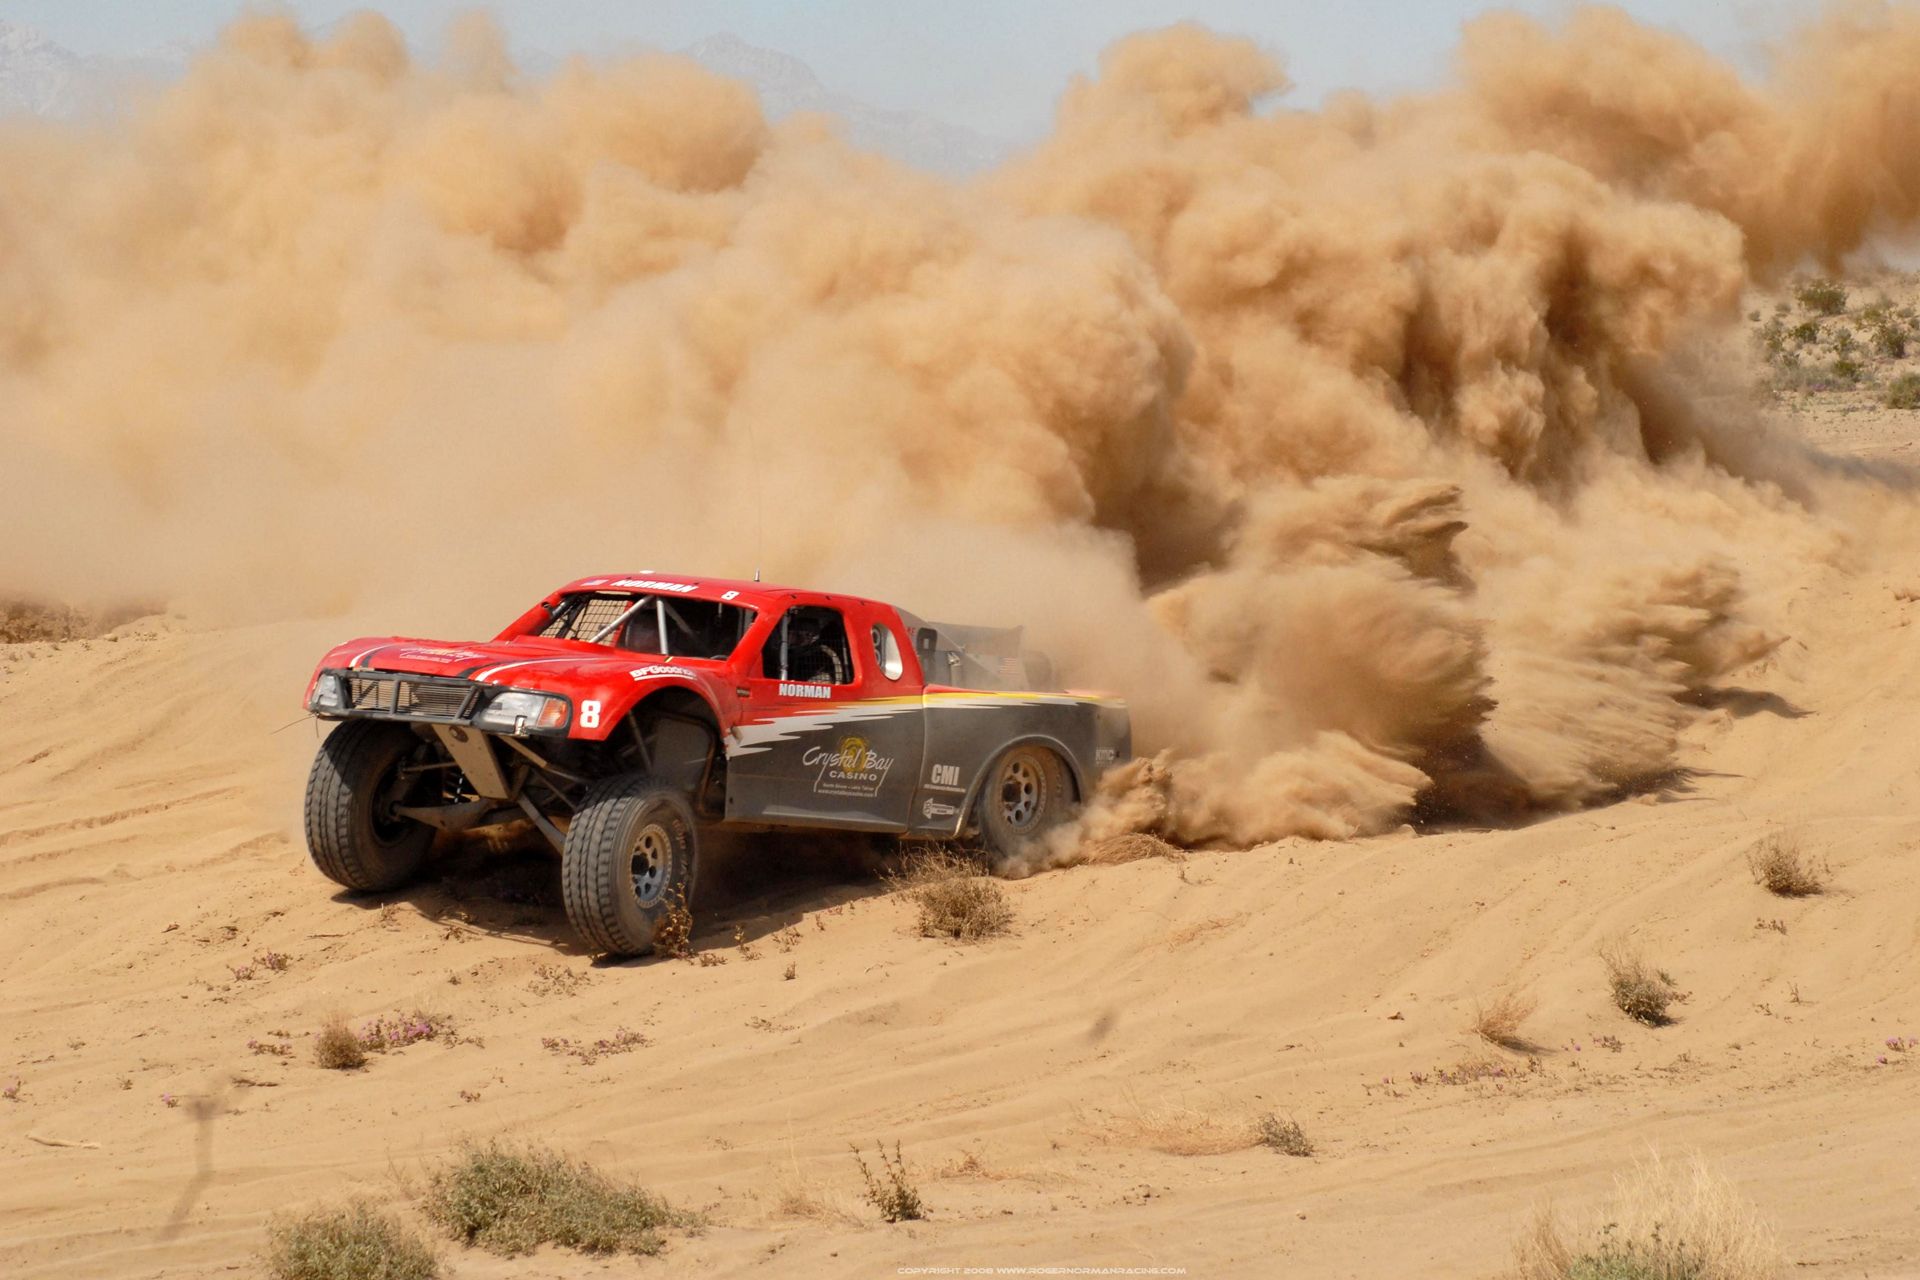 عکس خروش ماشین مسابقه قرمز و مشکی در شن ها در رالی داکار حیرت برانگیز